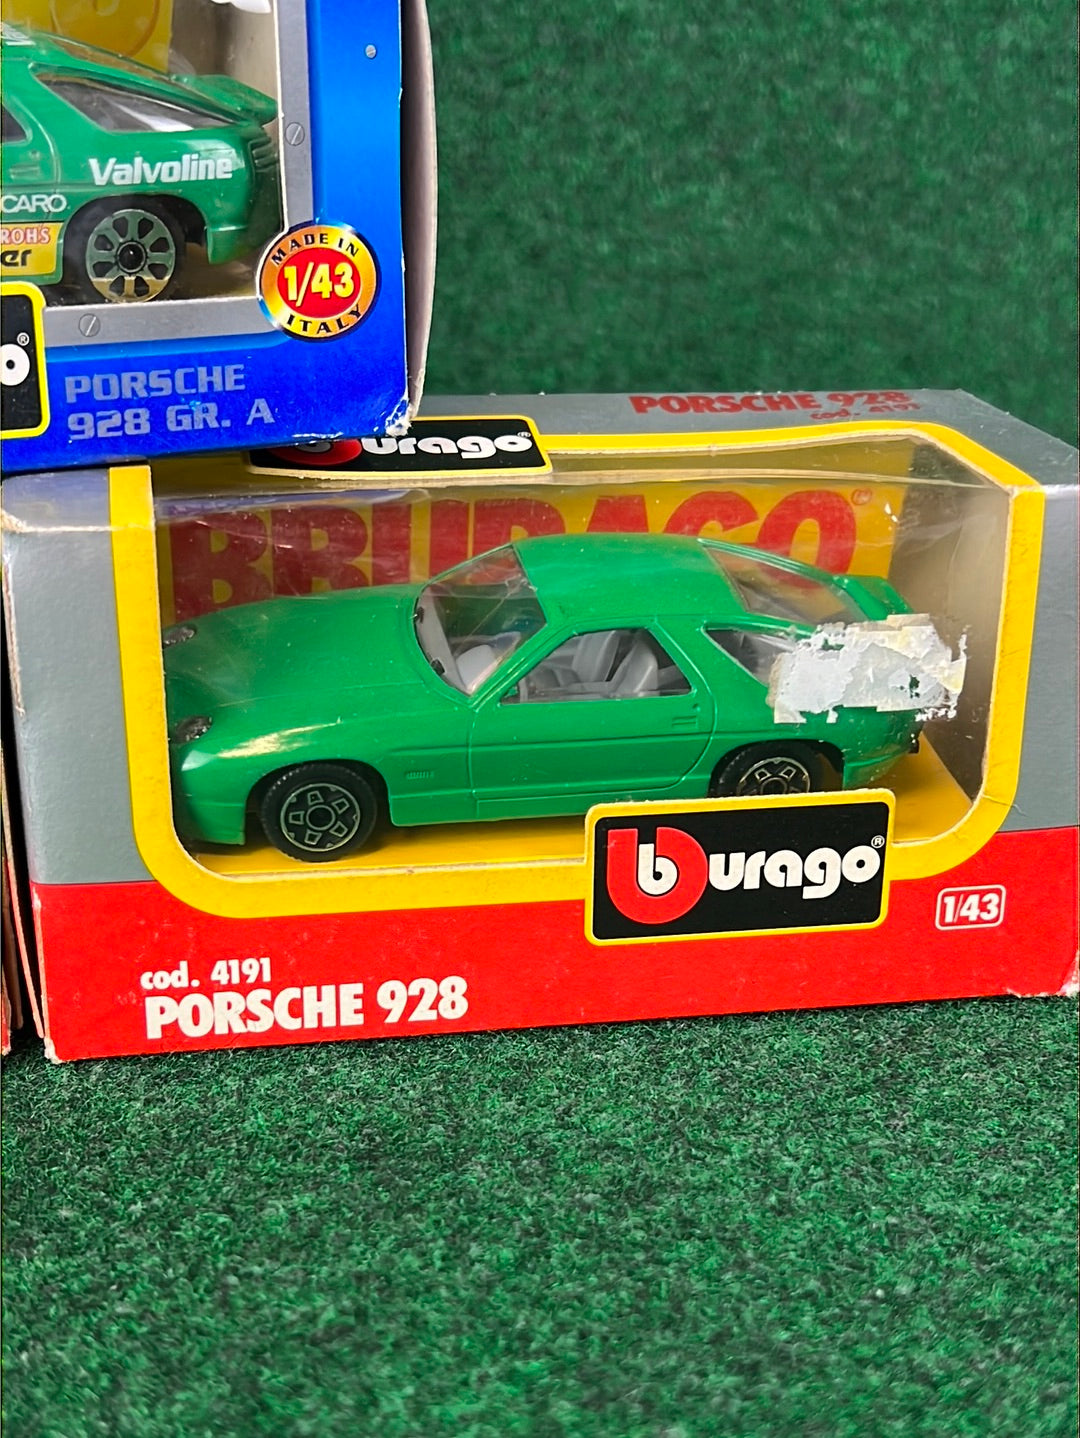 burago - Porsche 928 Diecast Toy Car Set of 3